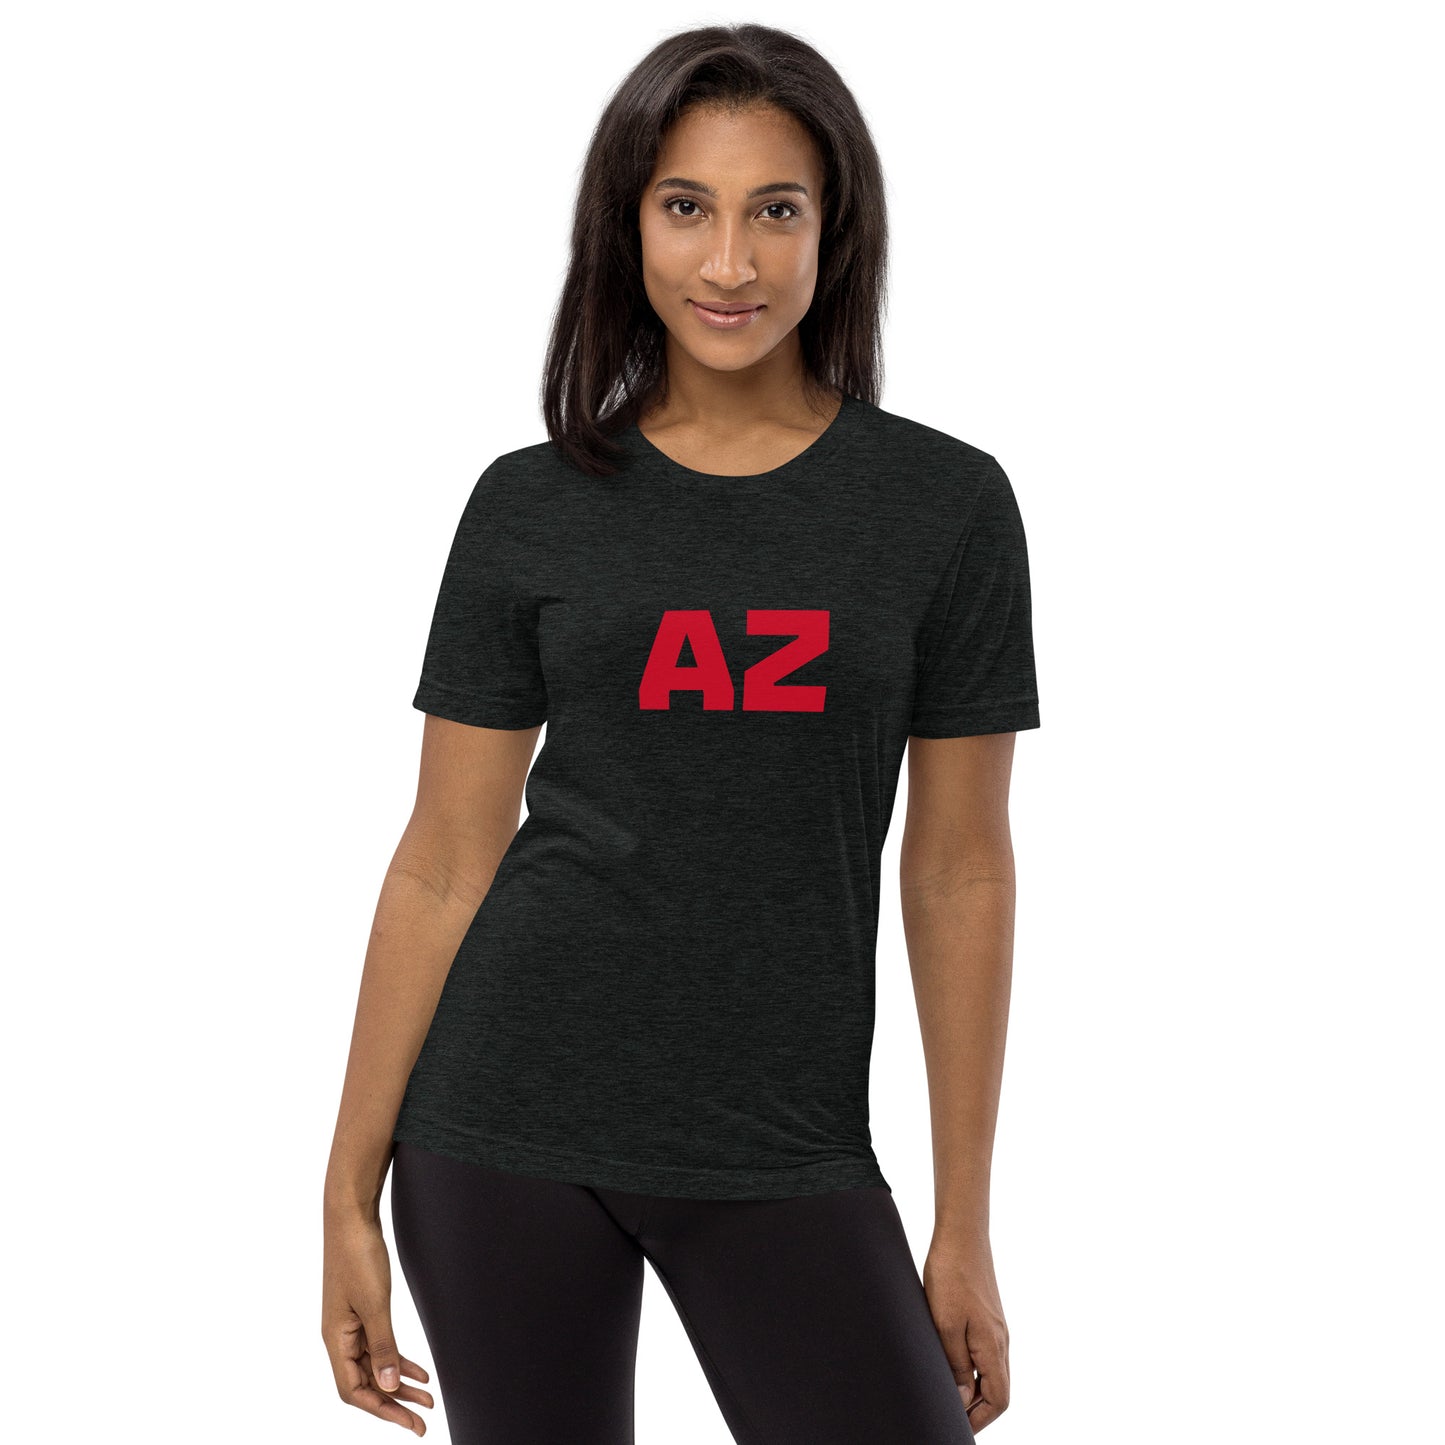 AZ Arizona Strong Short Sleeve Tri-Blend T-Shirt